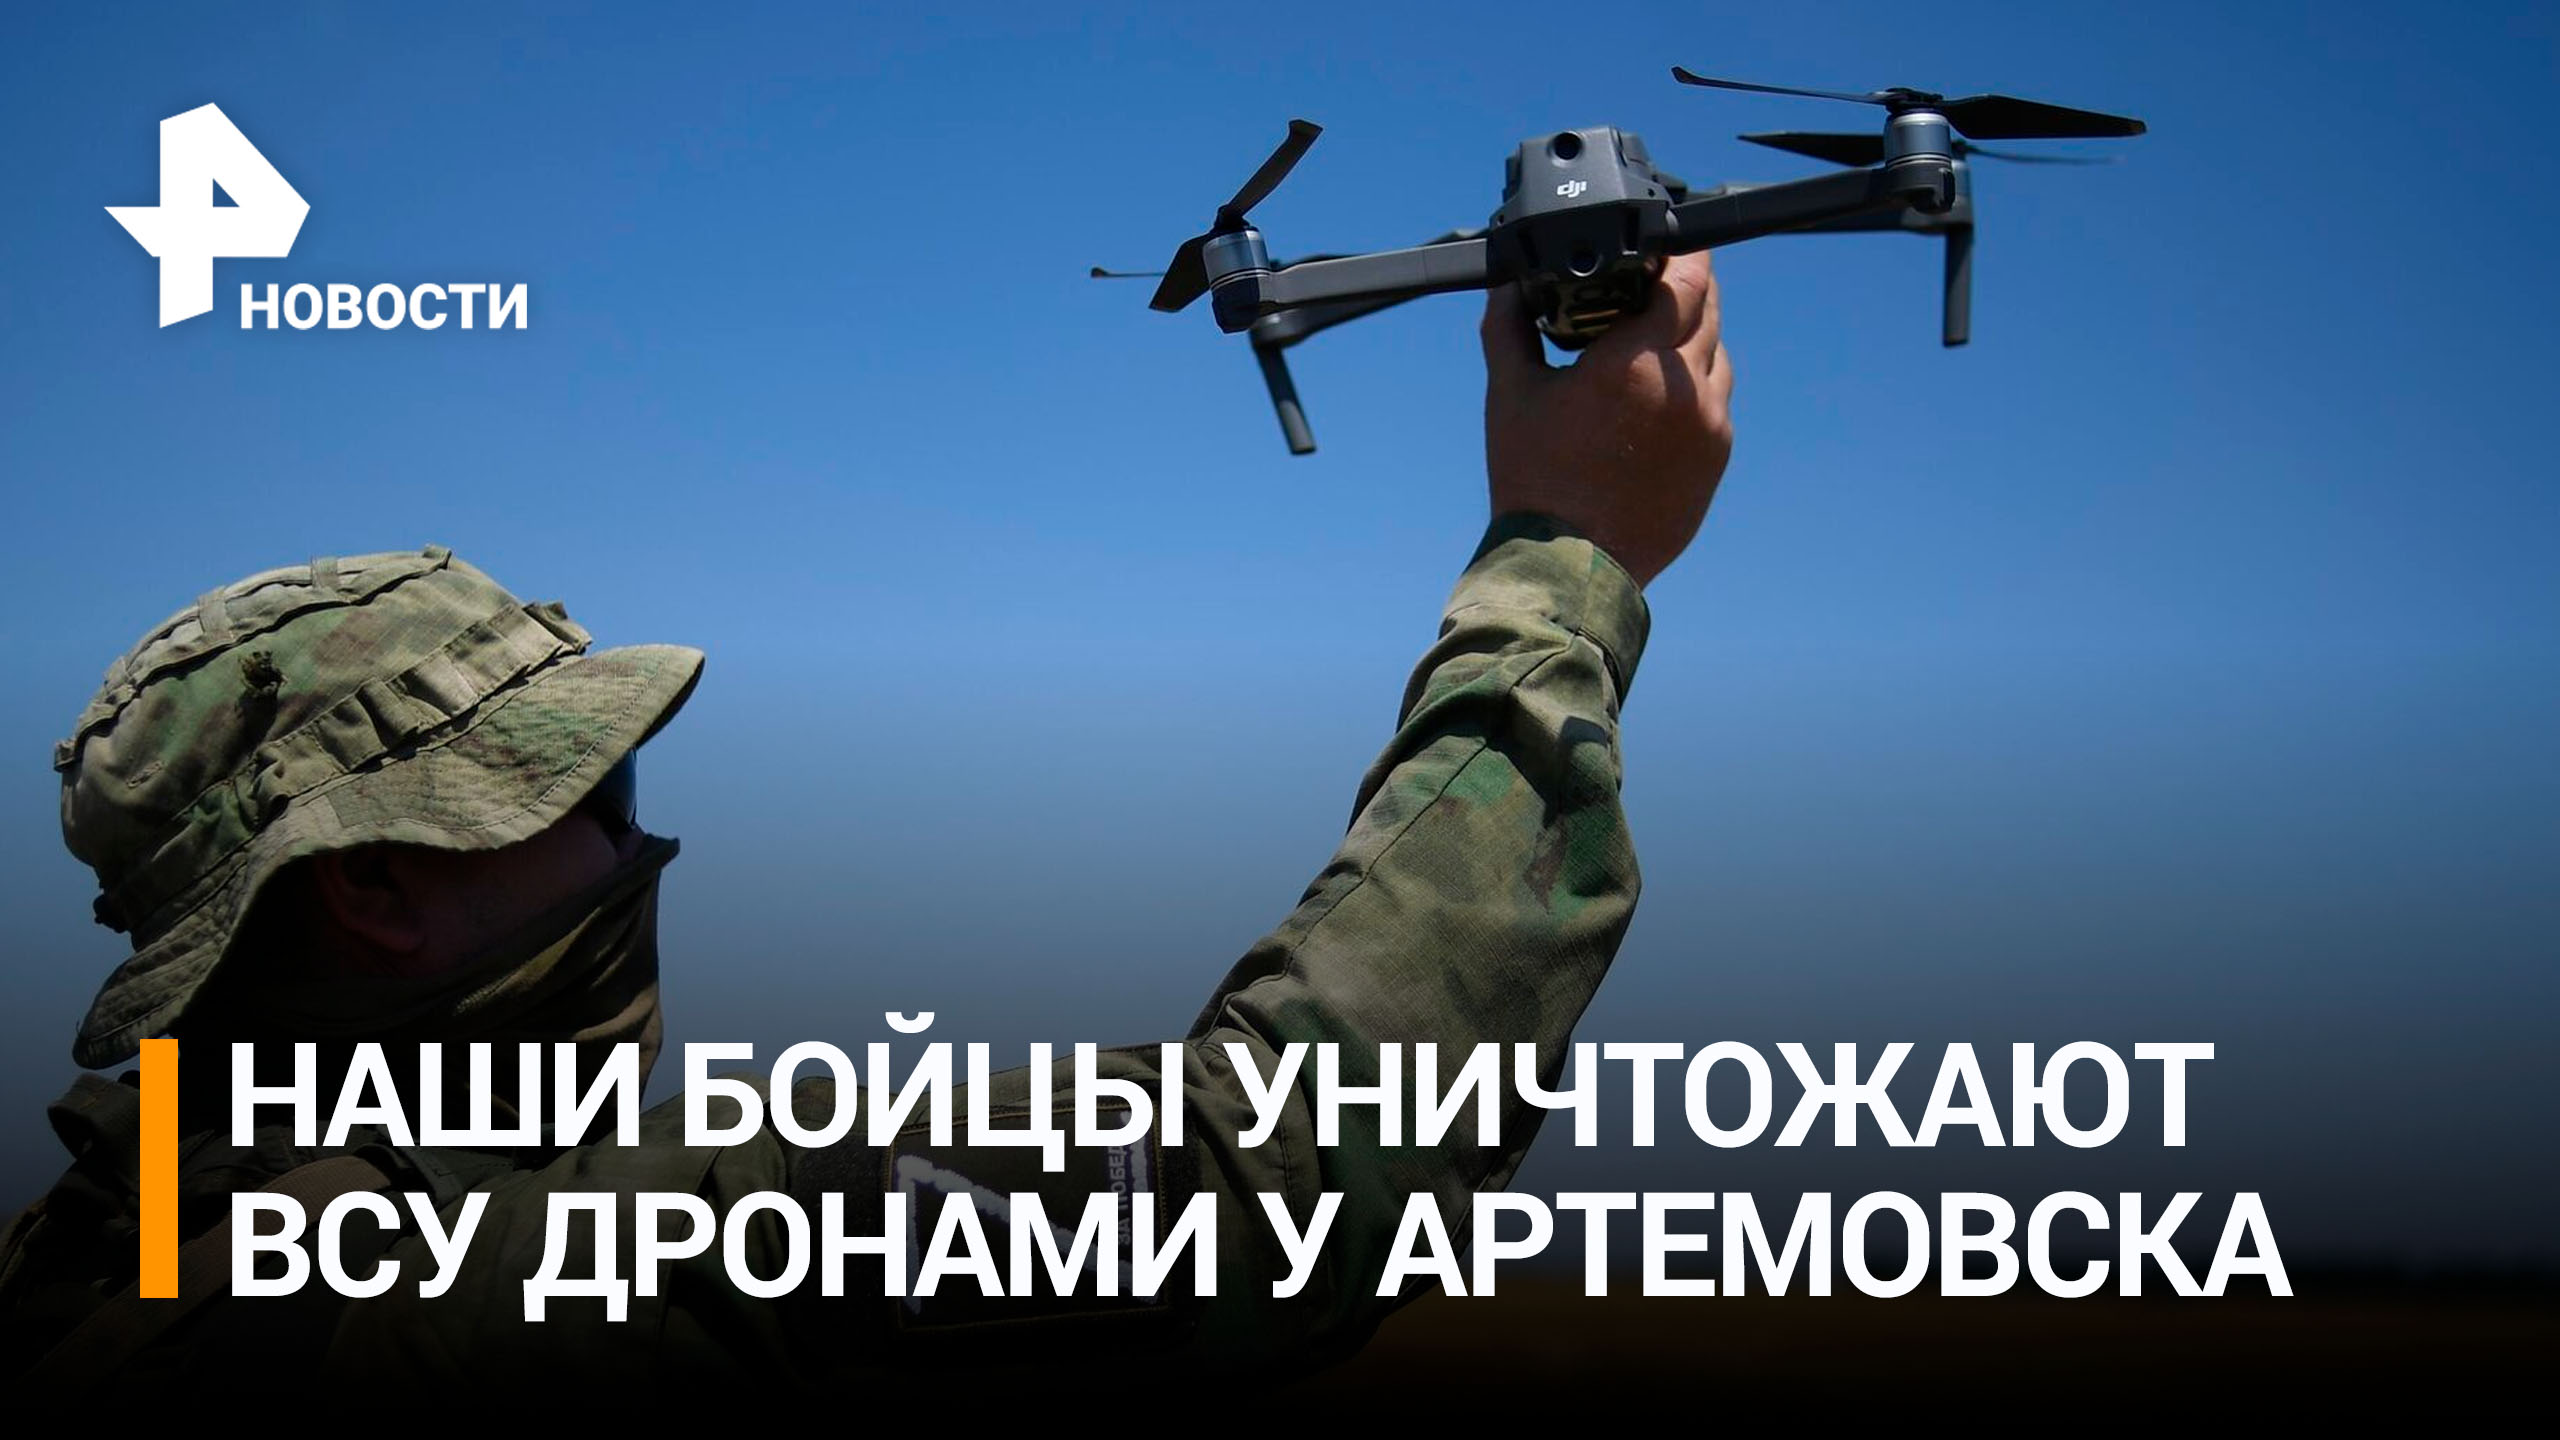 Российские бойцы с помощью дронов уничтожили группу ВСУ в районе Артемовска / РЕН Новости